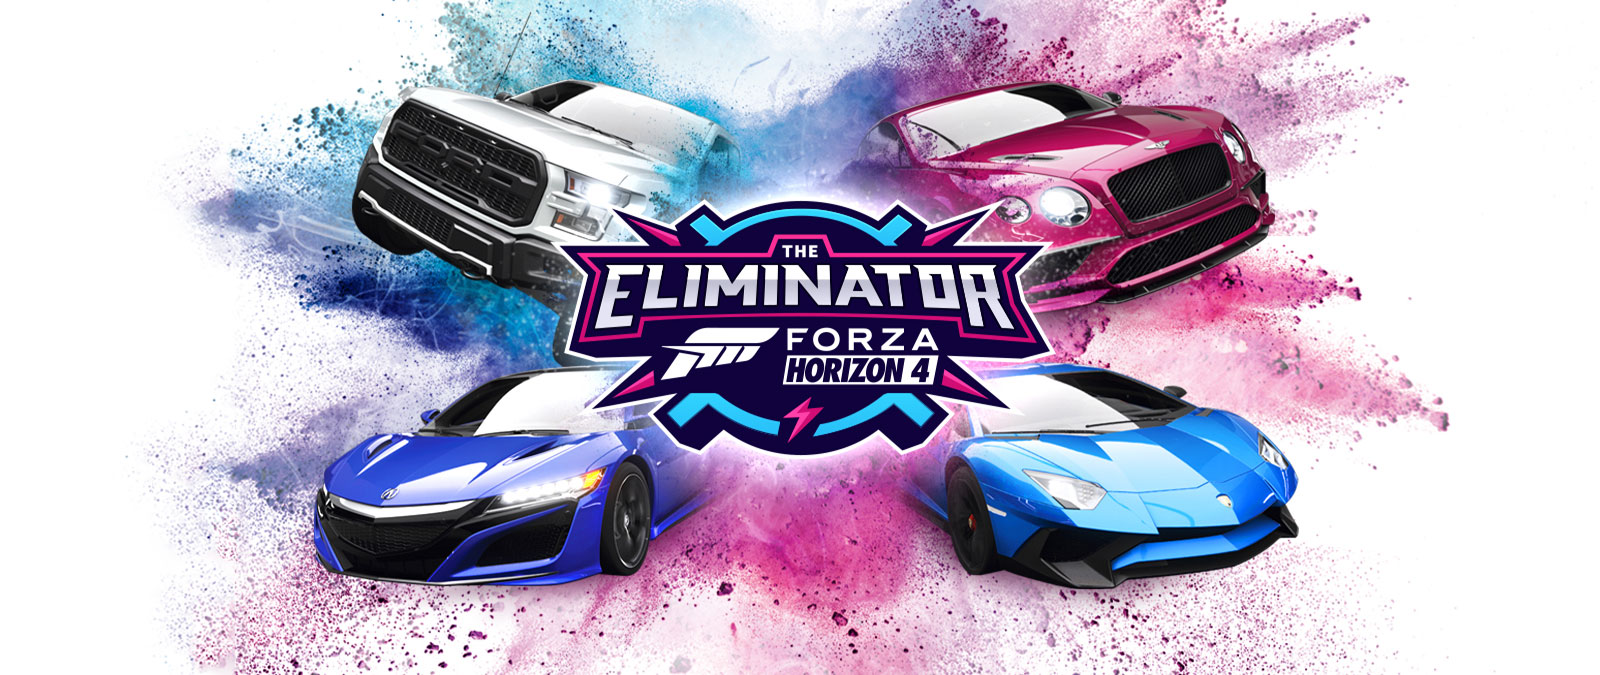 The Eliminator, Forza Horizon 4 logosu, çevresinde mavi ve pembe tozların olduğu dört araba